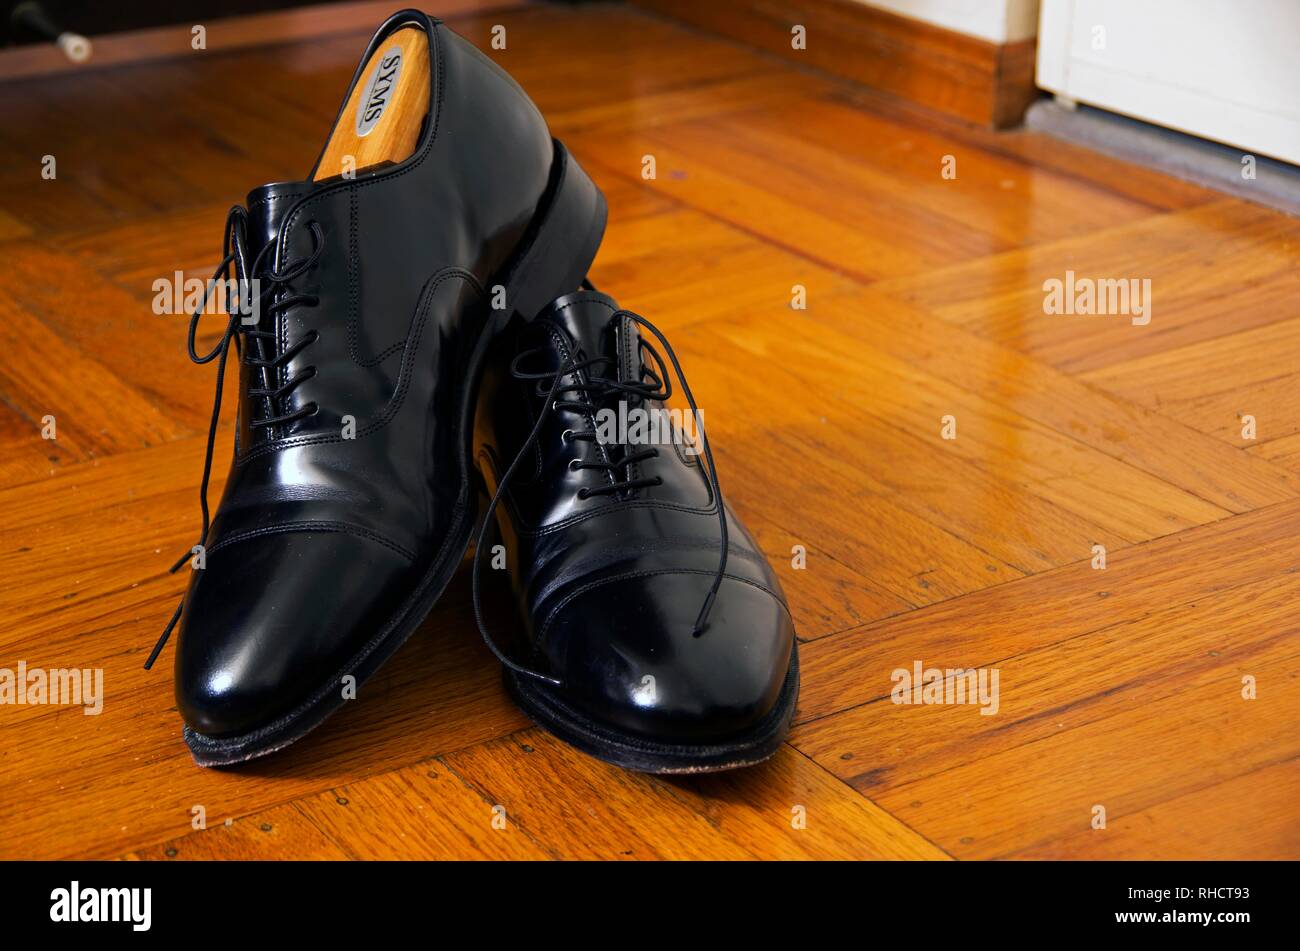 Diese Johnson & Murphy gap Schuhe sind eine gute, professionelle Auswahl  der Schuhe zu tragen Stockfotografie - Alamy